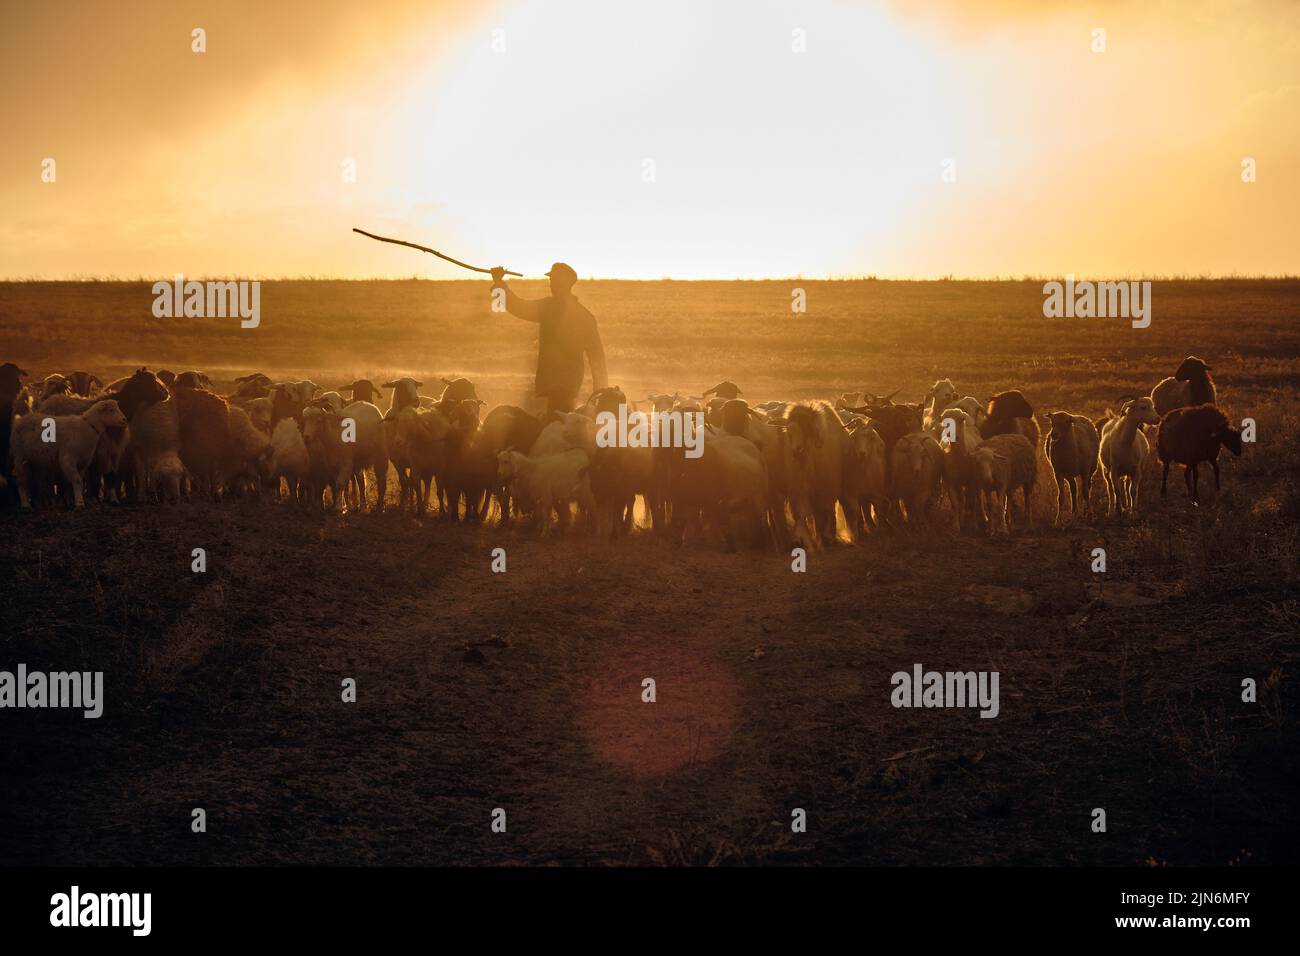 Un jeune berger avec un bâton, bergers et moutons à t Banque D'Images